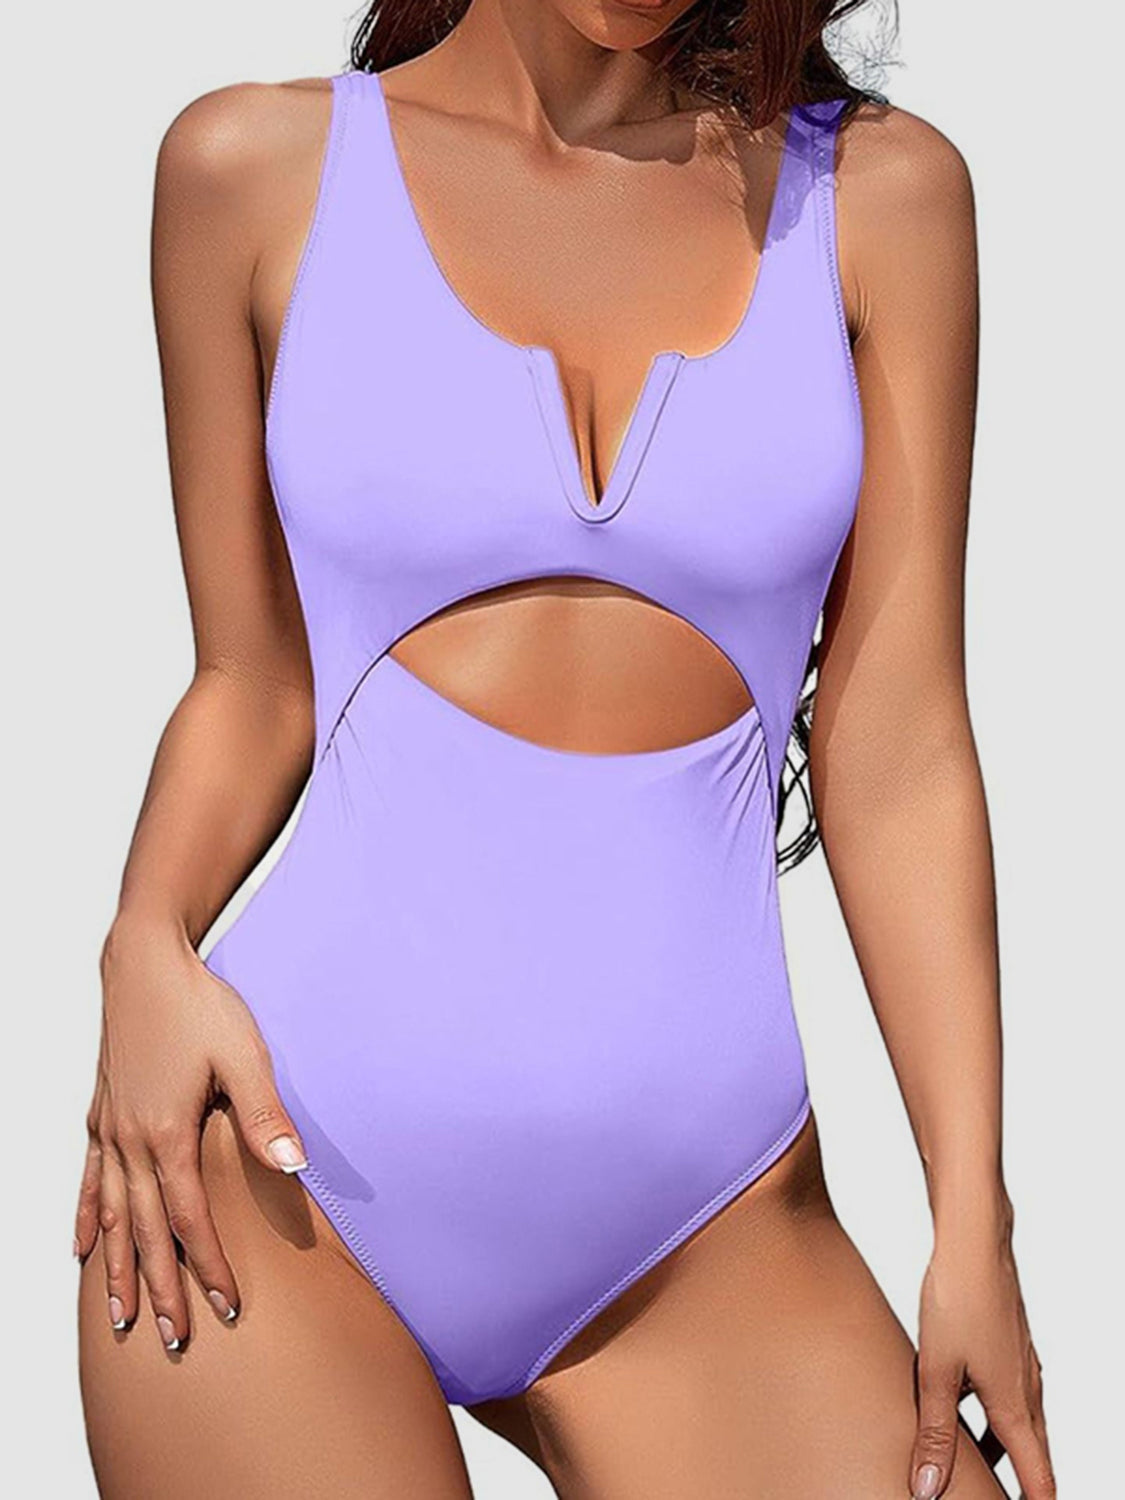 TEEK - Notched Wide Strap One-Piece Swimwear SWIMWEAR TEEK Trend Lavender S 